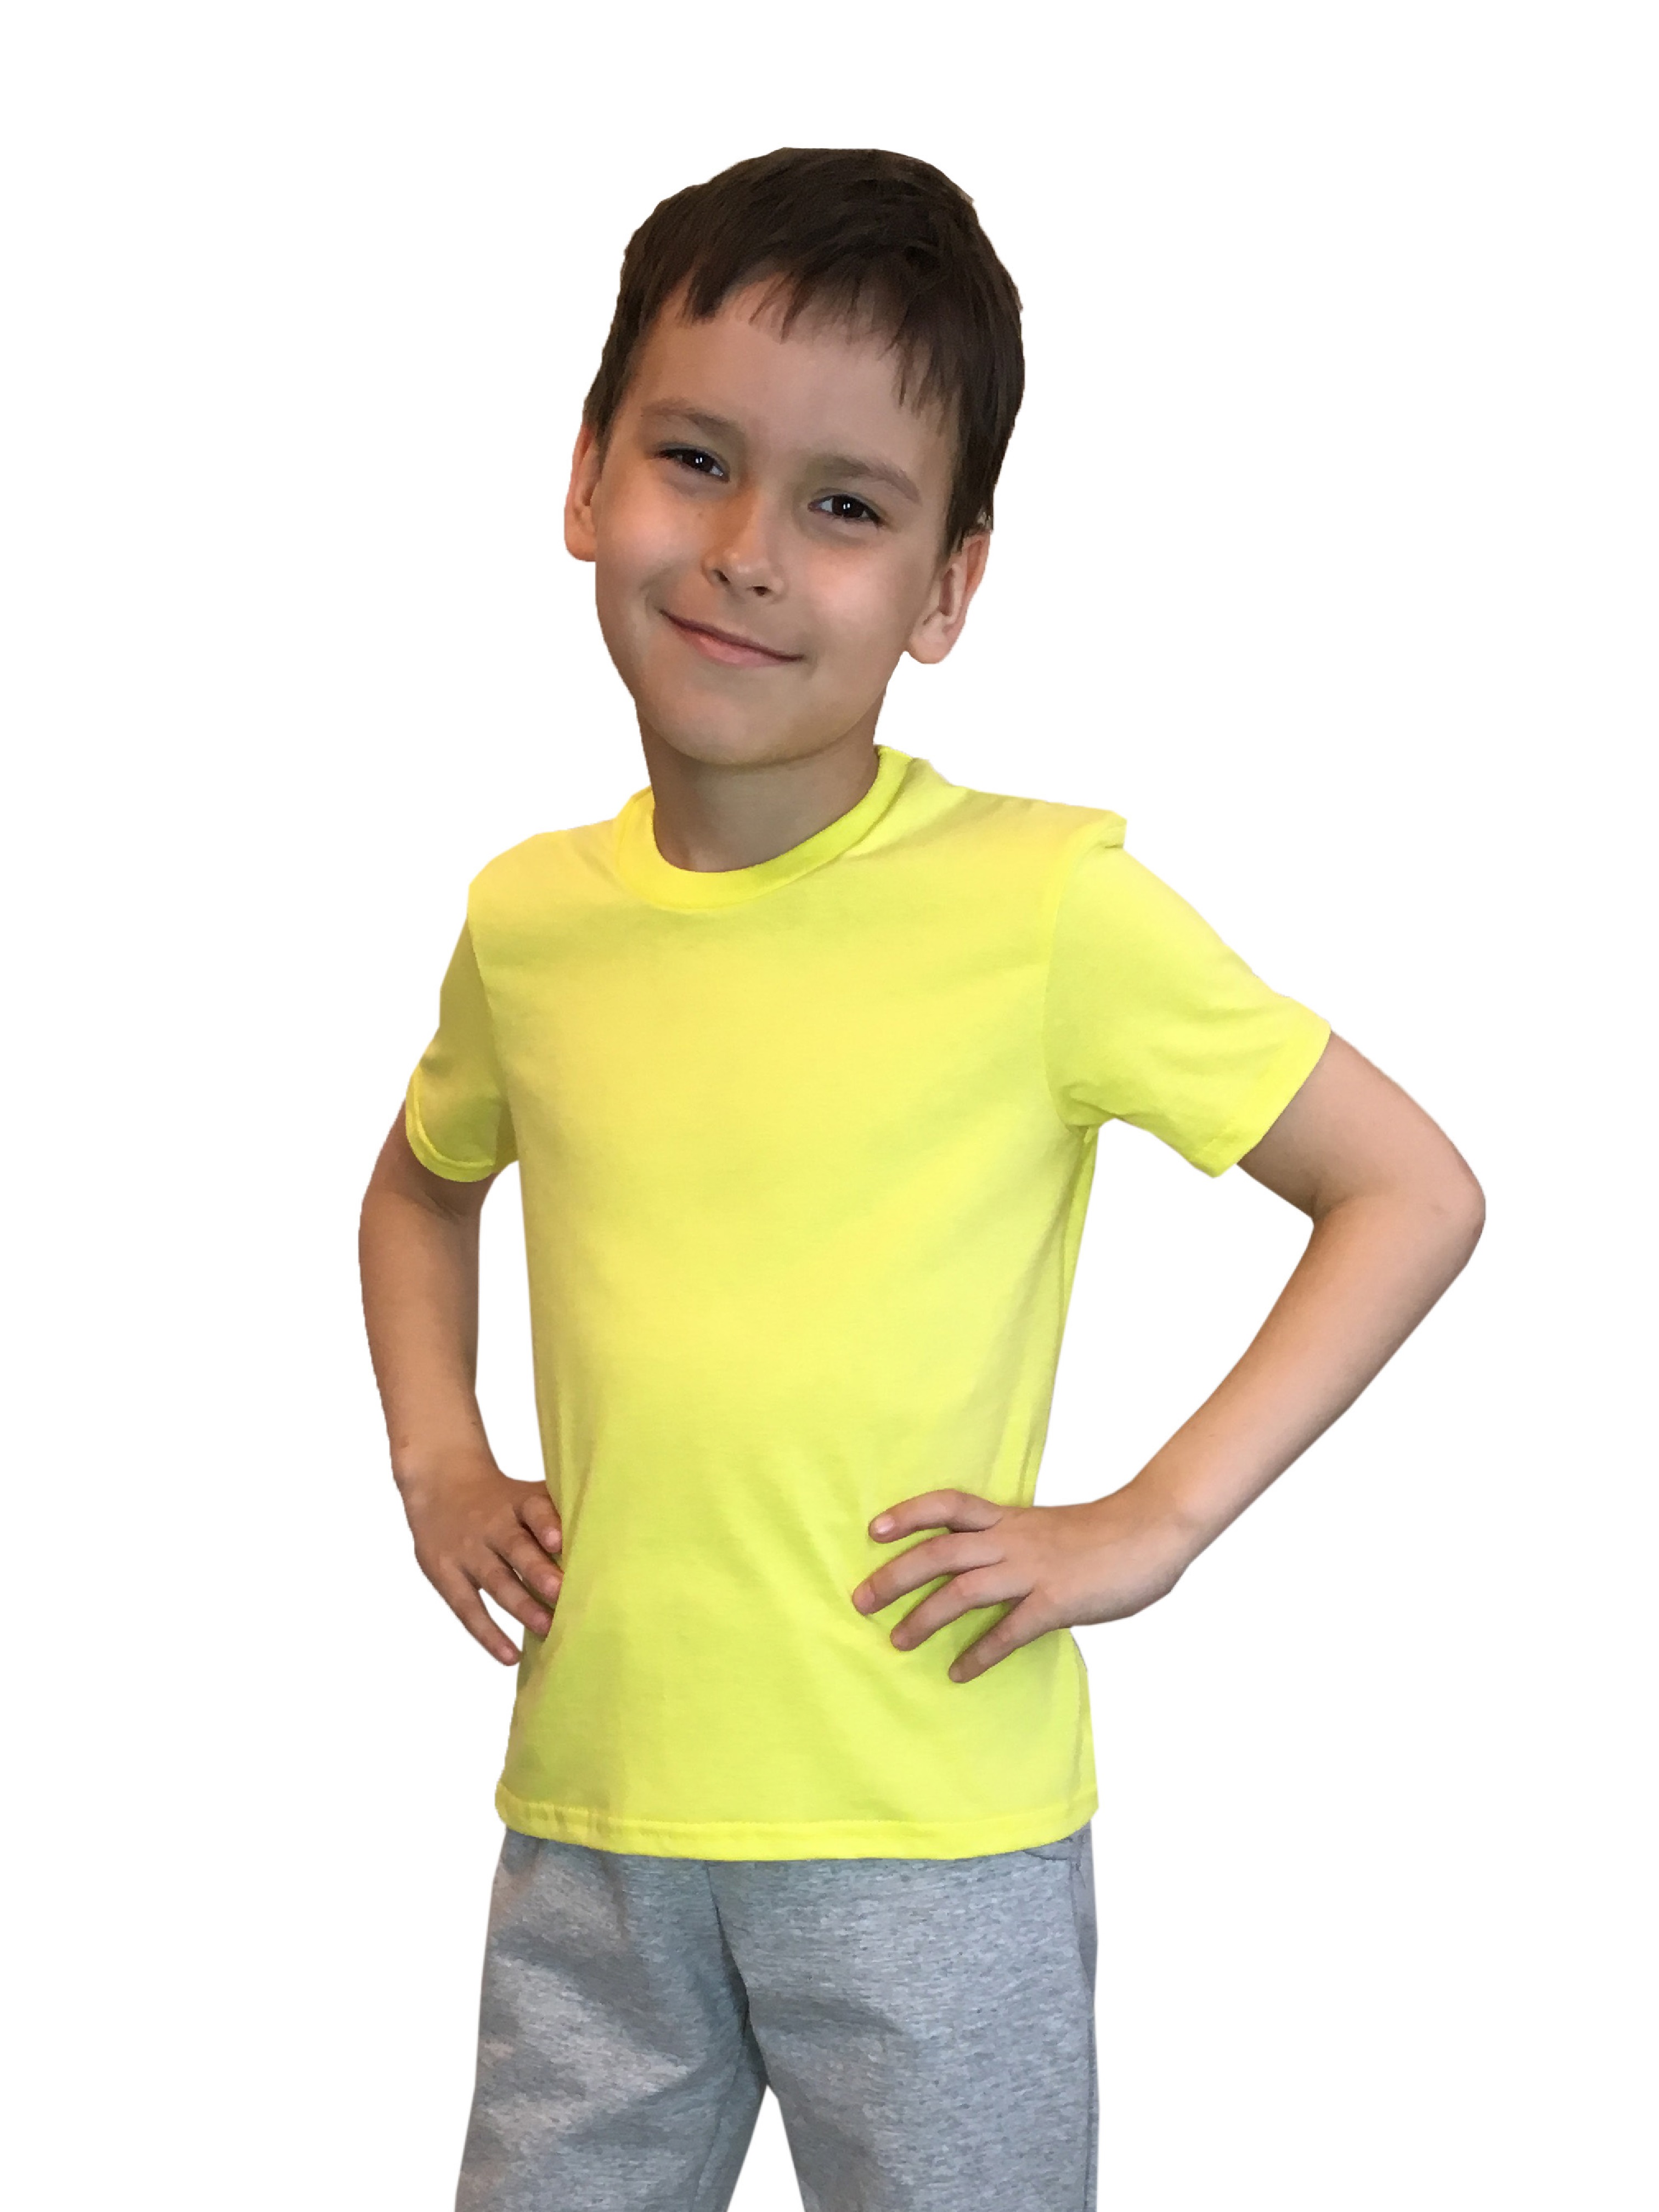 Футболка детская Детрик, желтая размер 122, Ф-1-57